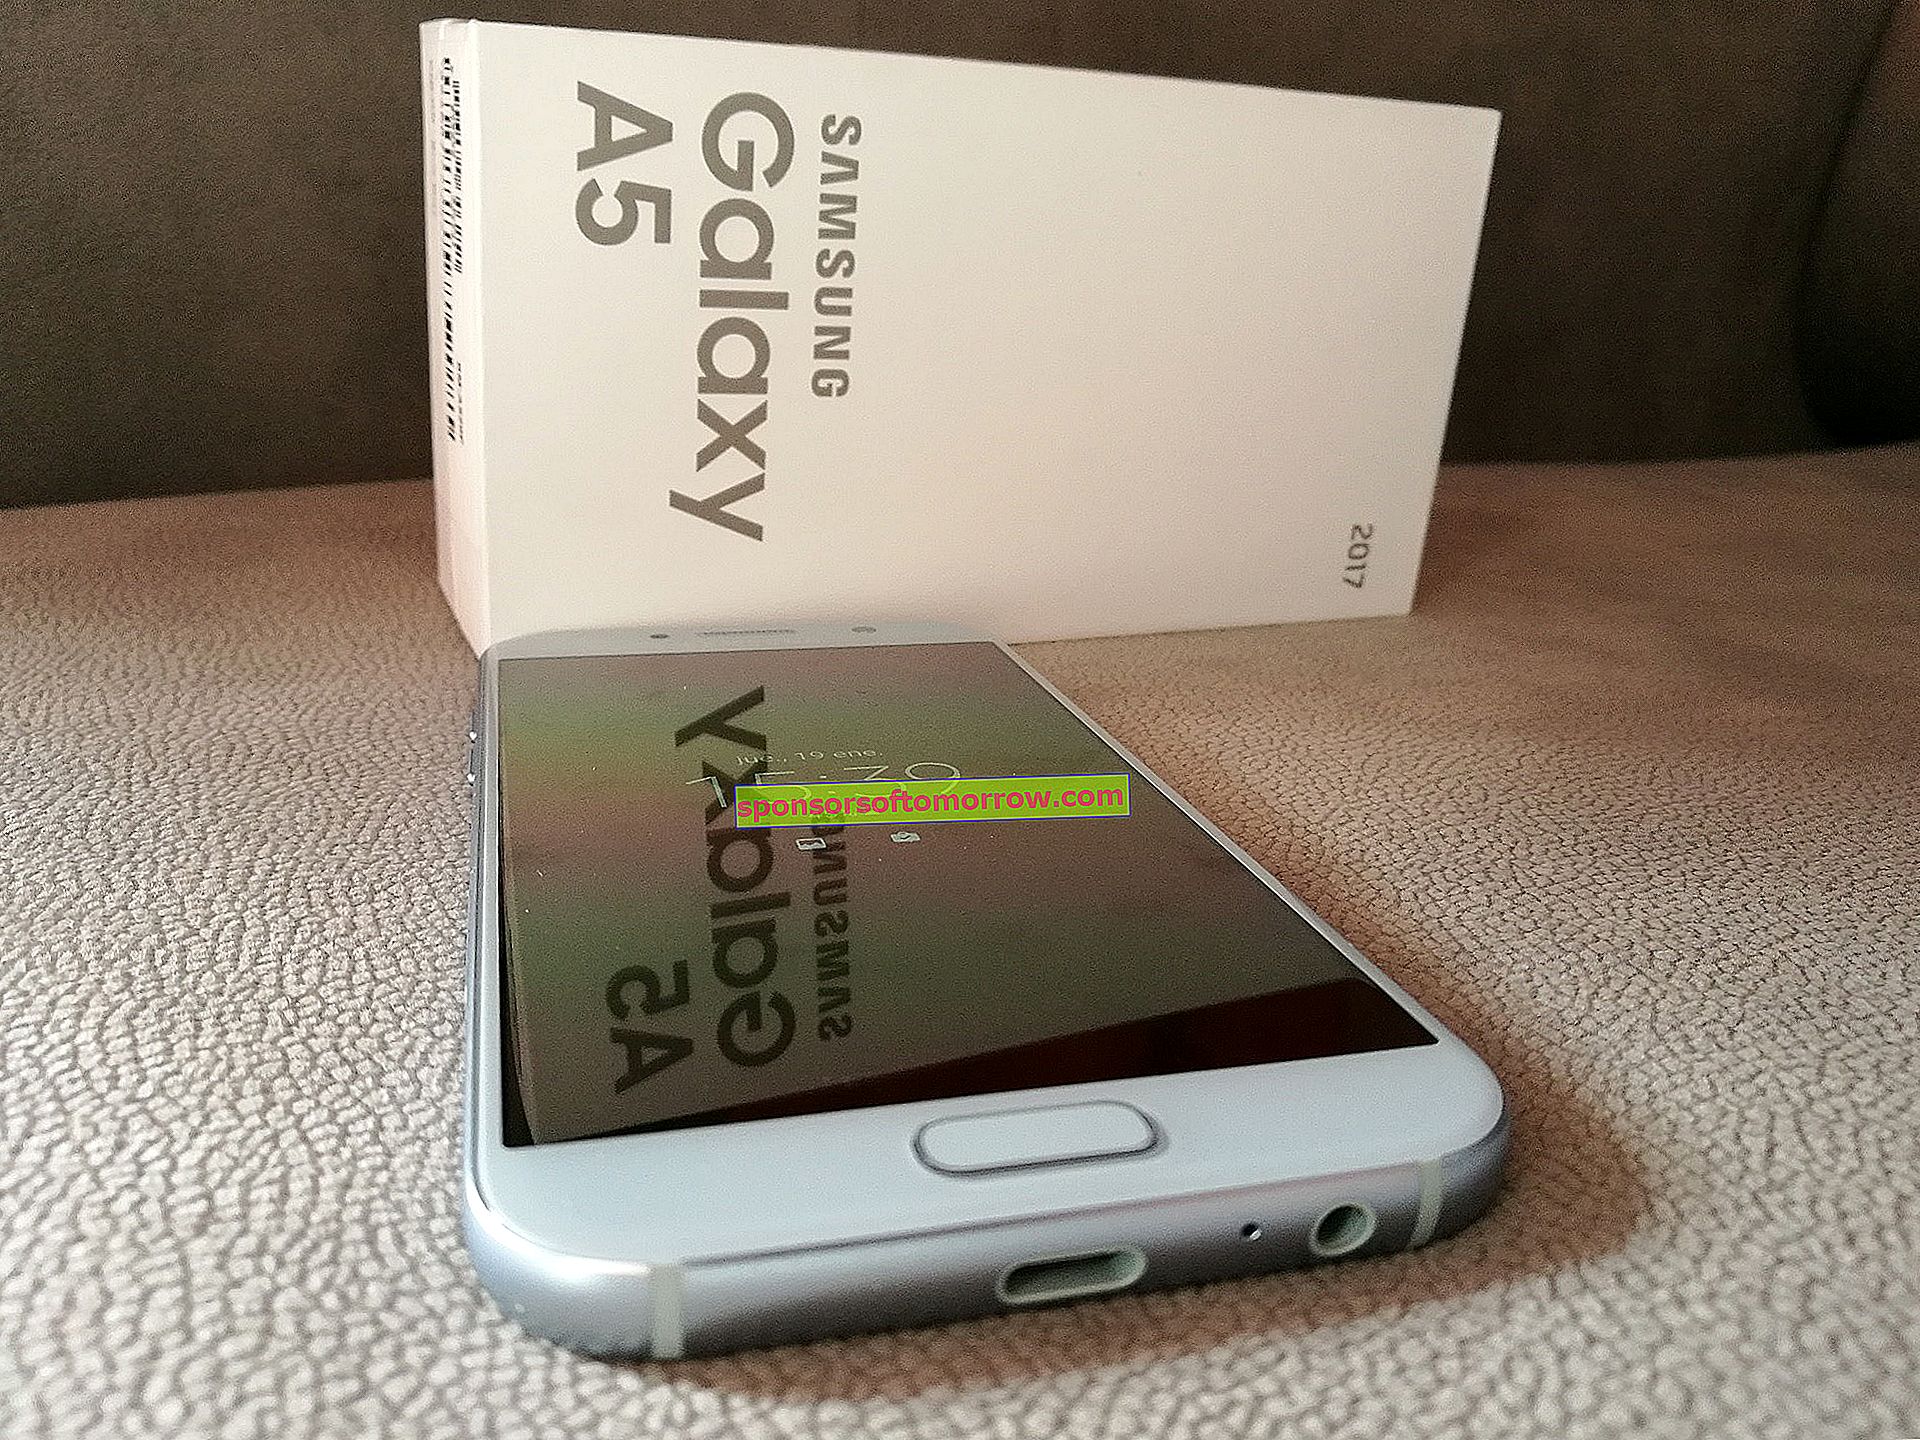 Samsung Galaxy A5 2017, przetestowaliśmy go